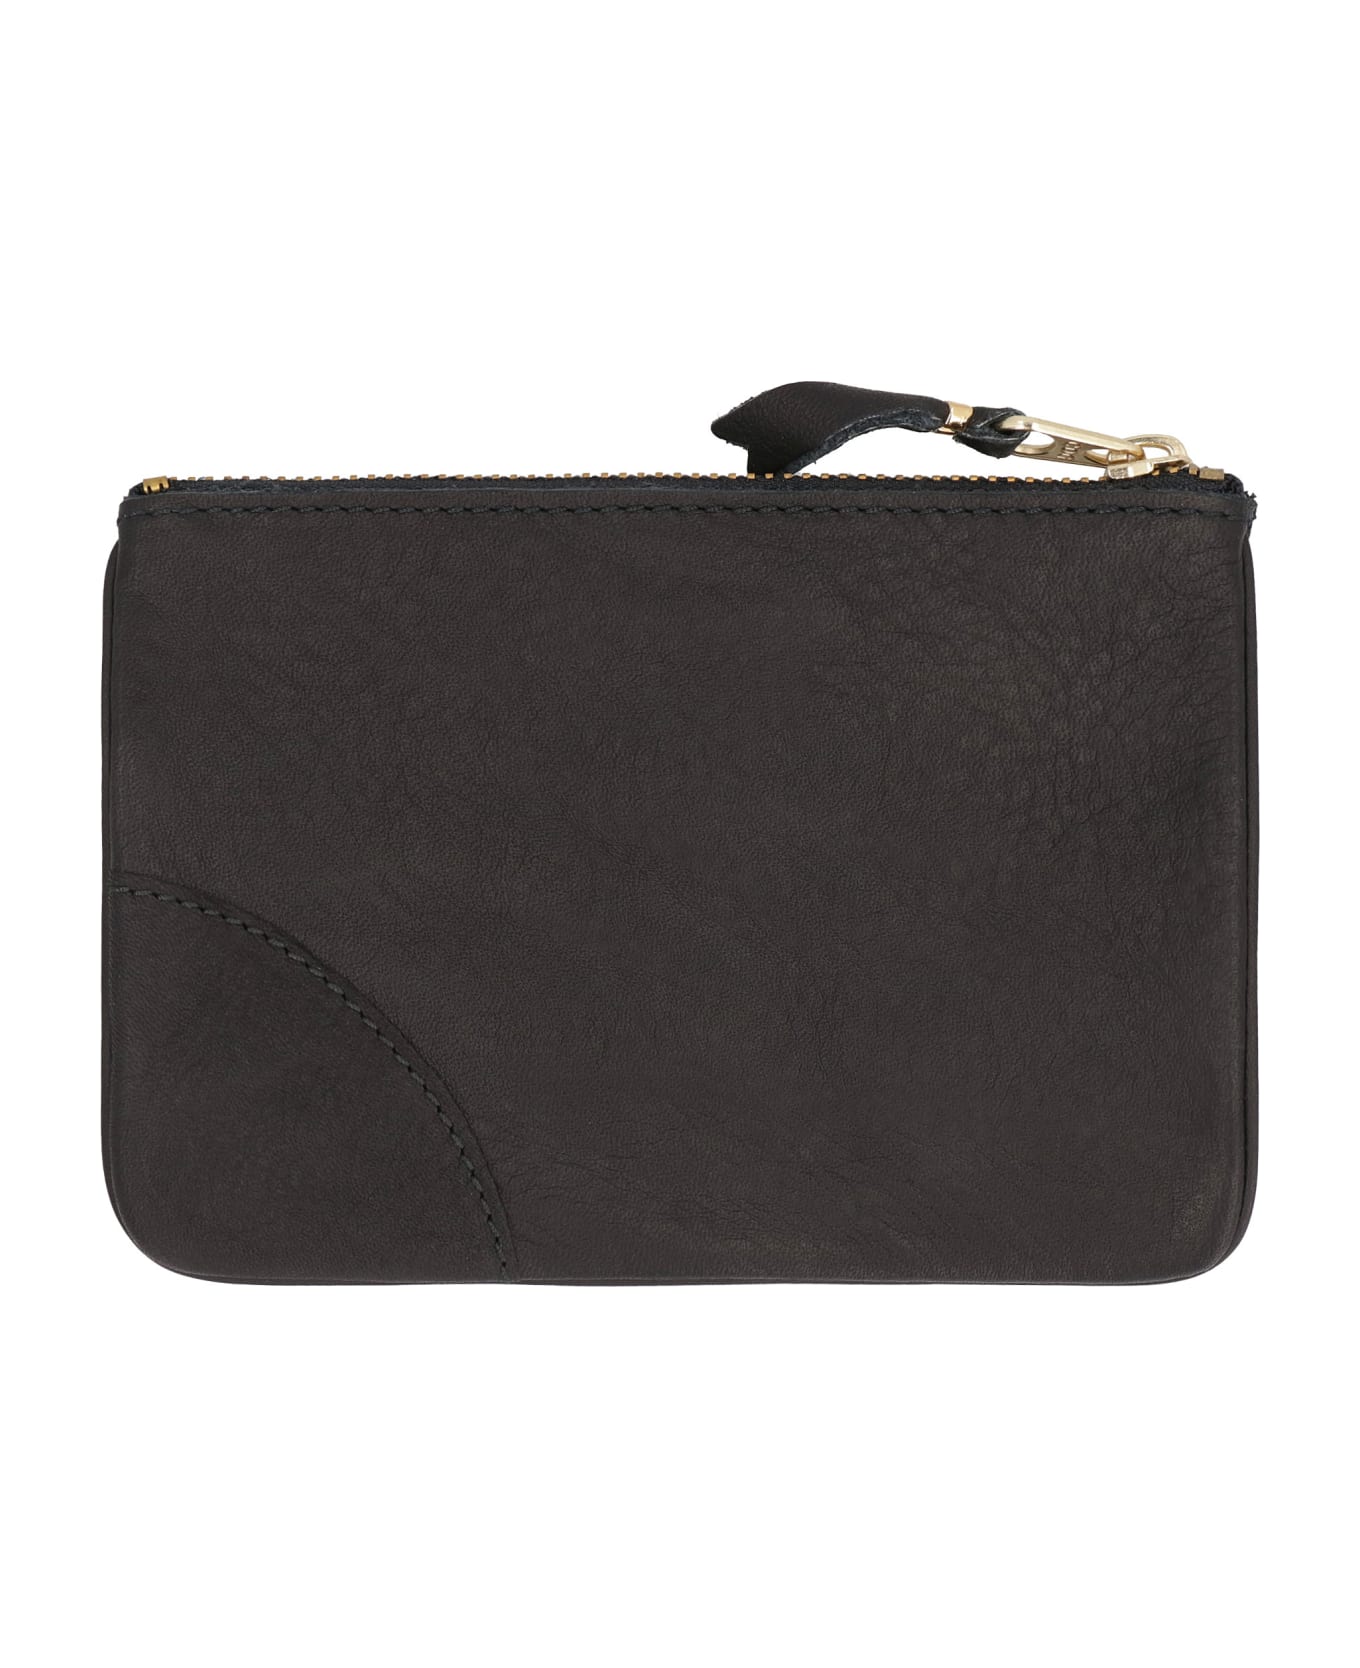 Comme des Garçons Wallet Small Leather Flat Pouch - black 財布